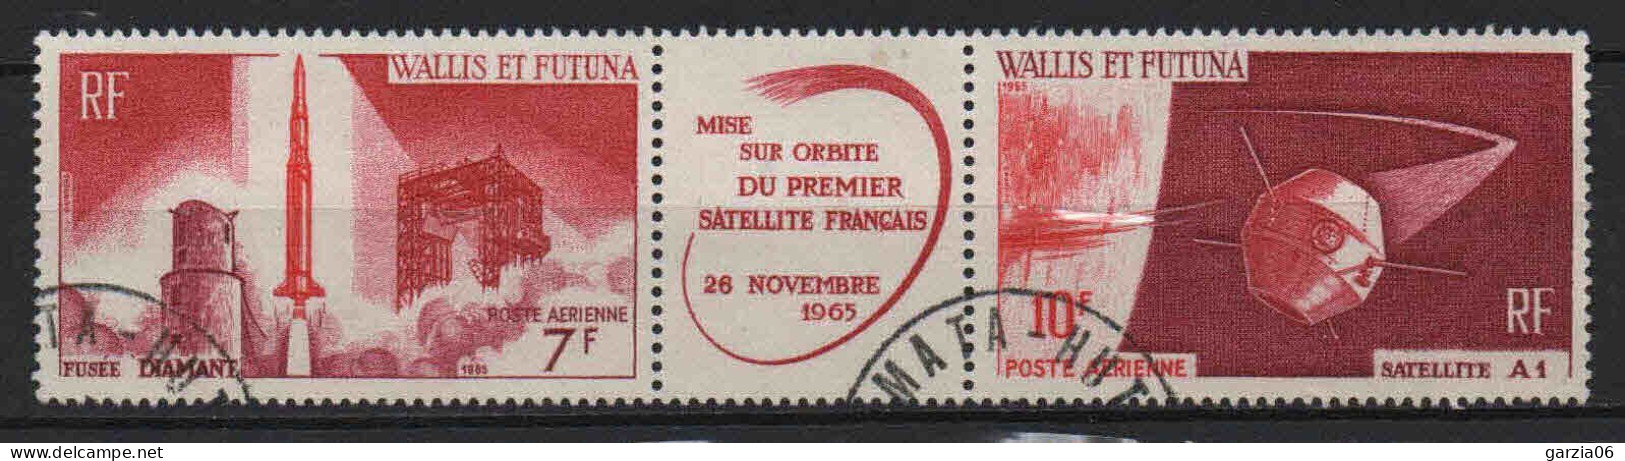 Wallis Et Futuna  - 1965  -  1ier Satellite Français  - PA 24/25A - Oblit - Used - Oblitérés